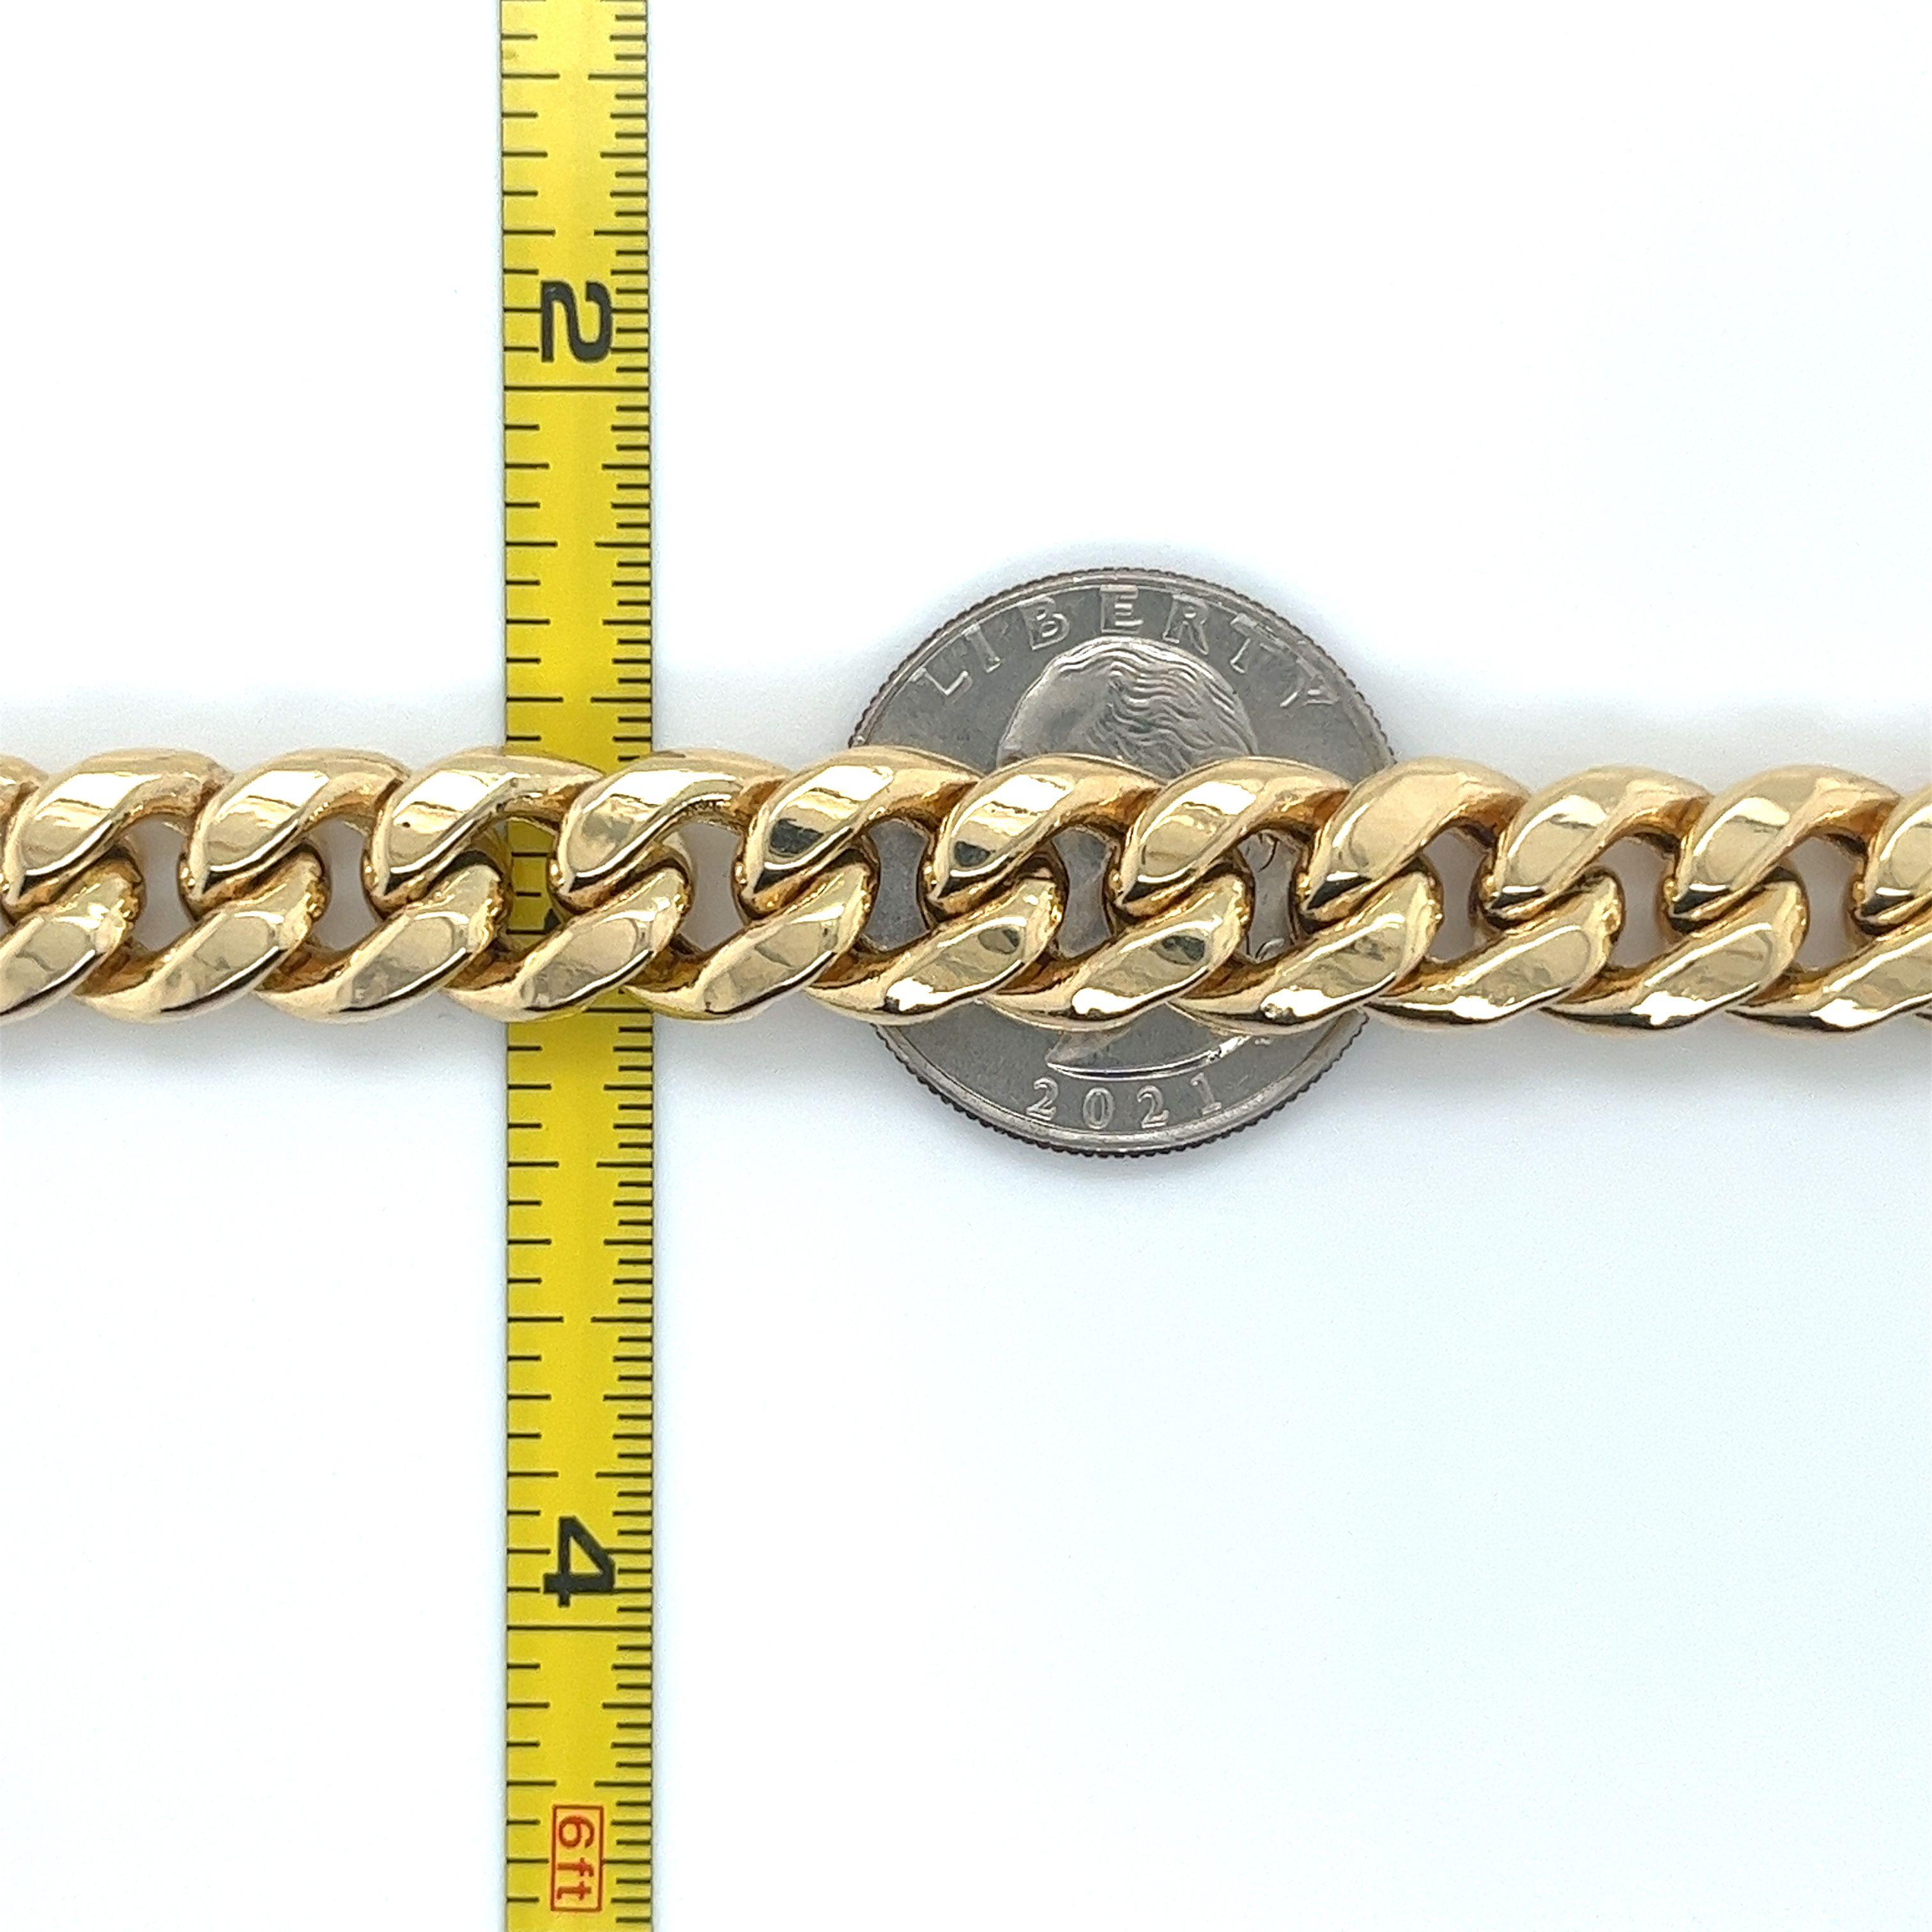 Erhöhen Sie Ihren Stil mit diesem exquisiten flachen kubanischen Gliederarmband aus 14 Karat Gold. Das Armband wurde fachmännisch gefertigt, um die zeitlose Eleganz dieses kultigen Designs zu unterstreichen. Es hat eine klassische Silhouette von 9